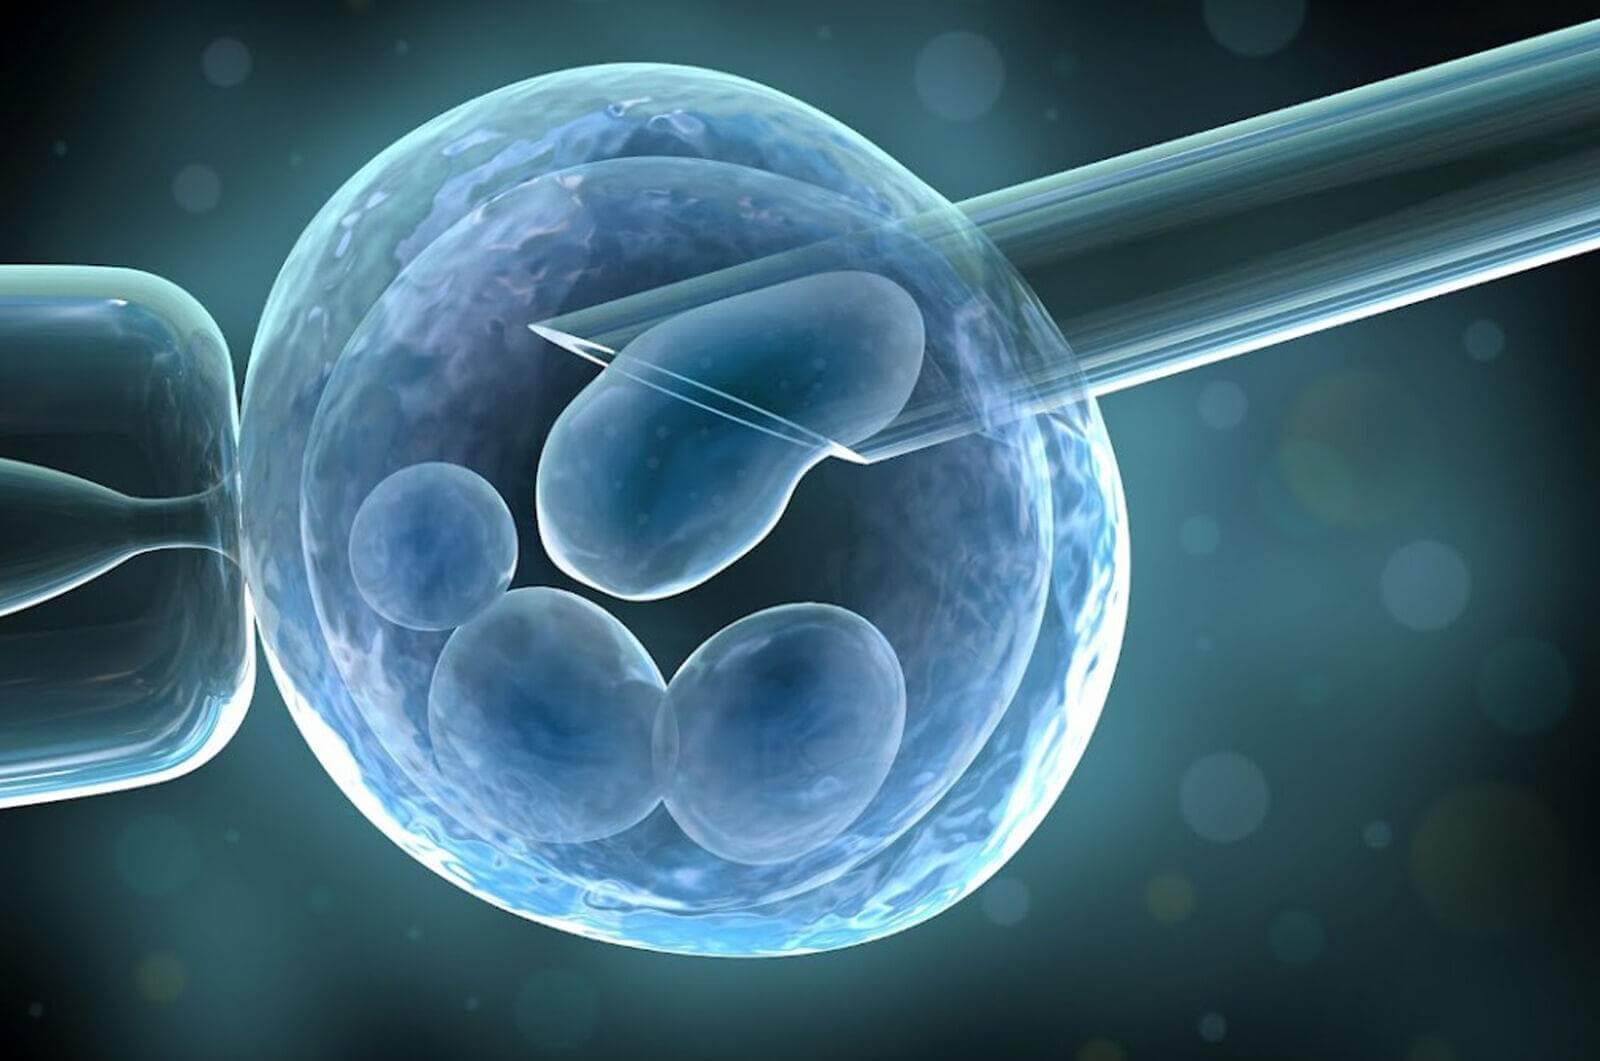 Біопсія ембріонів виконується мікроскопічно за допомогою мікроманіпуляторів